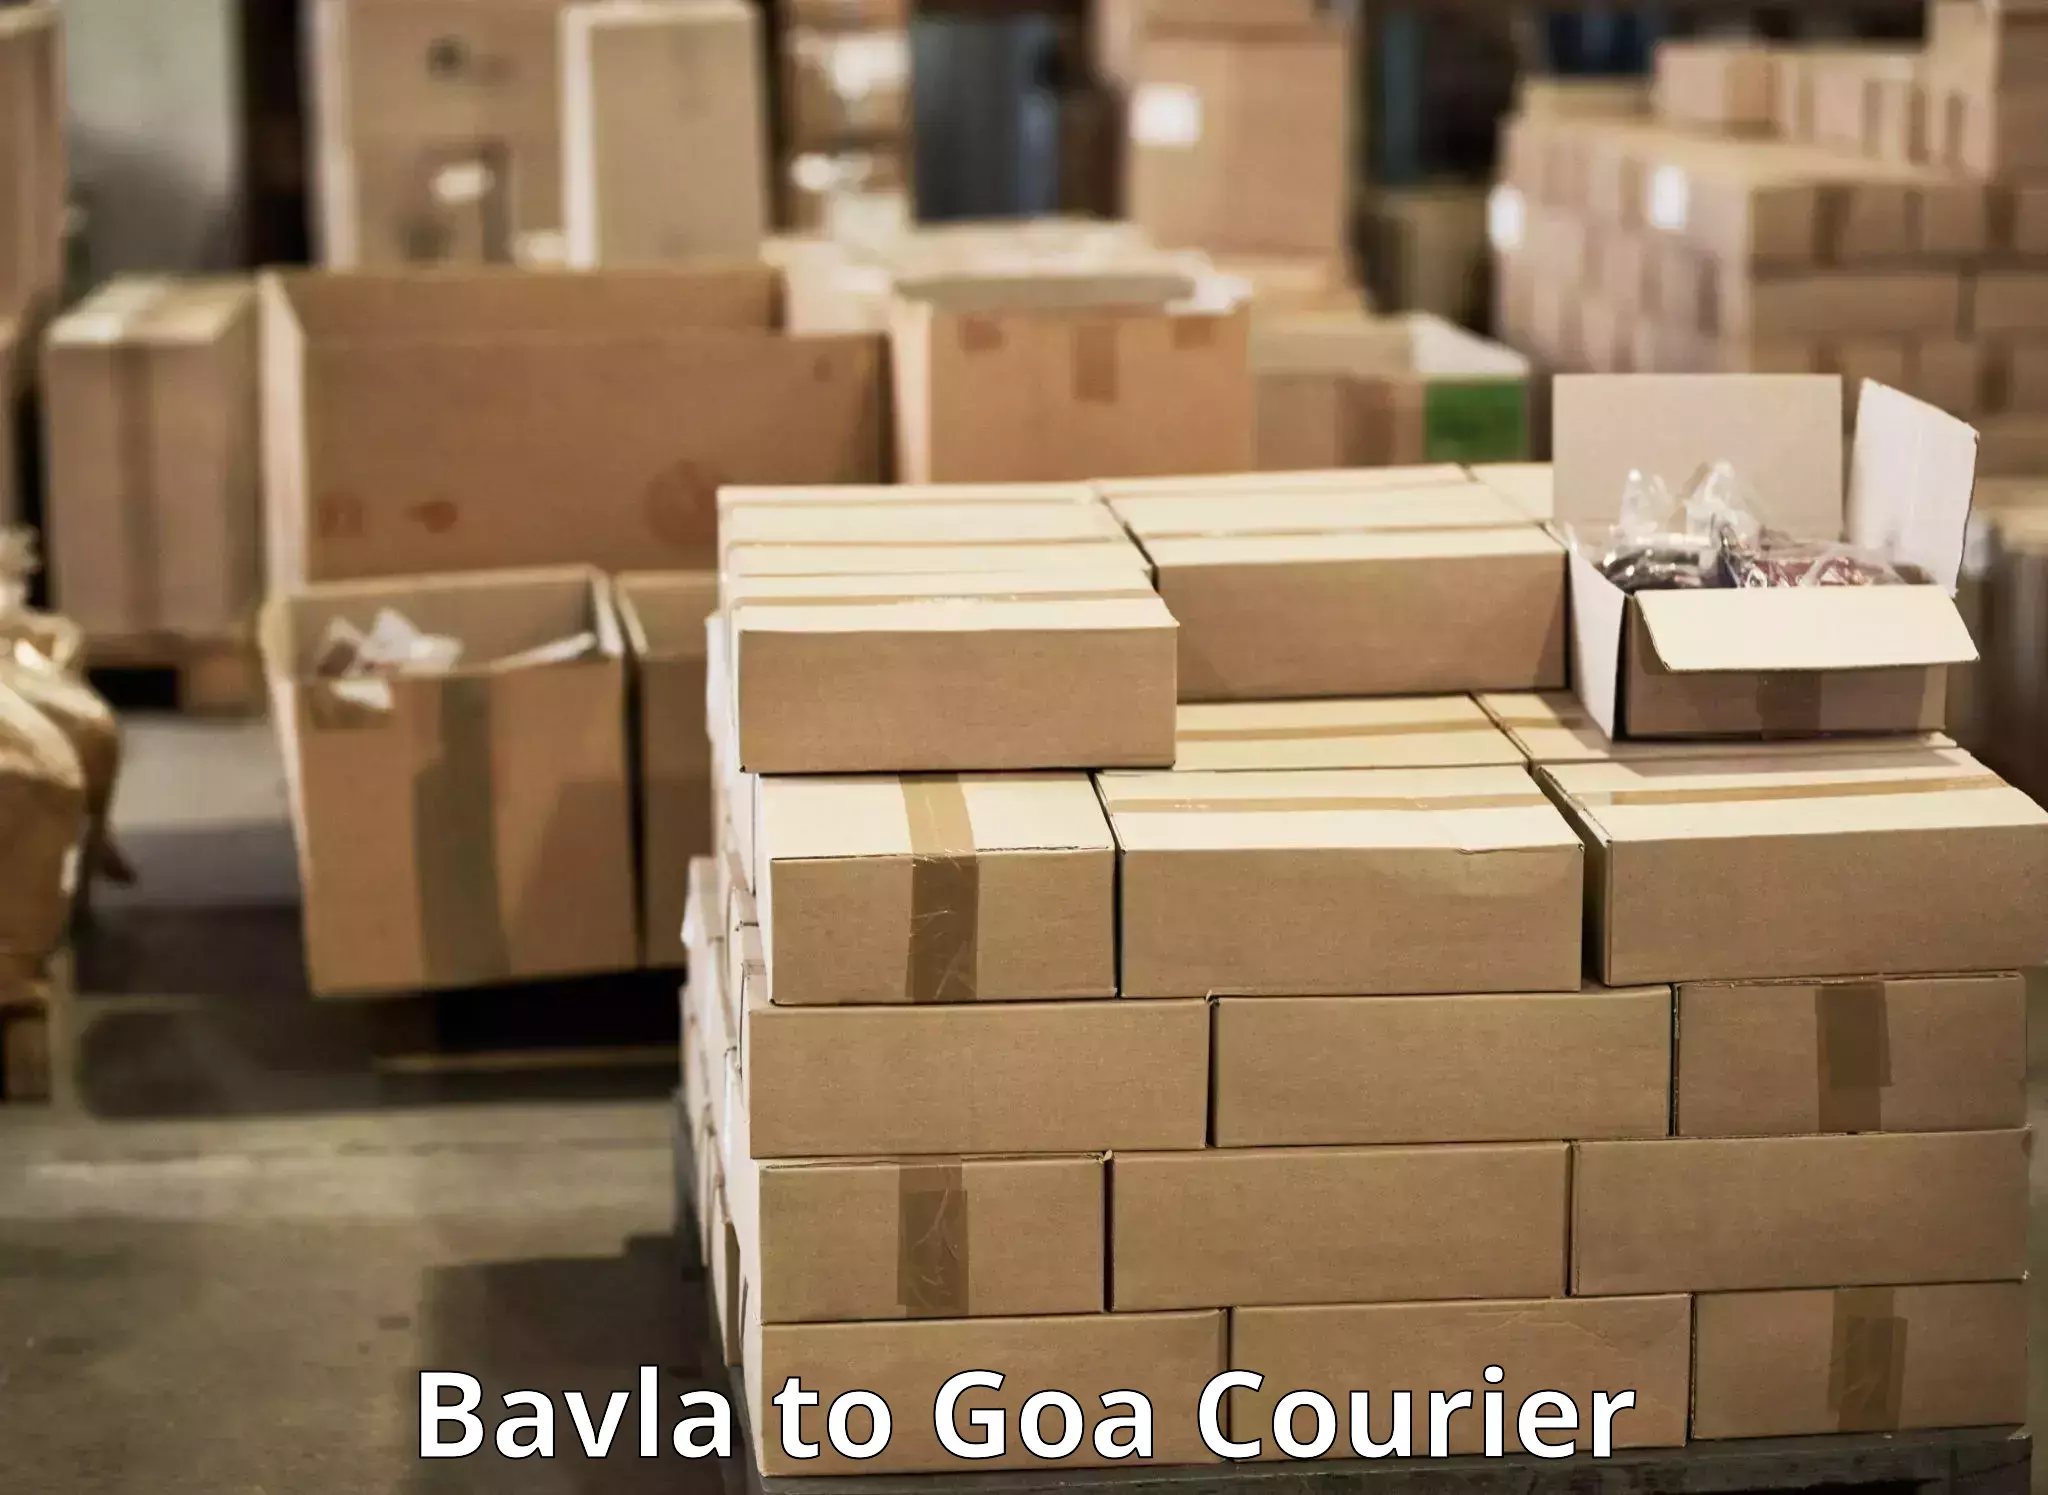 Global courier networks Bavla to Goa